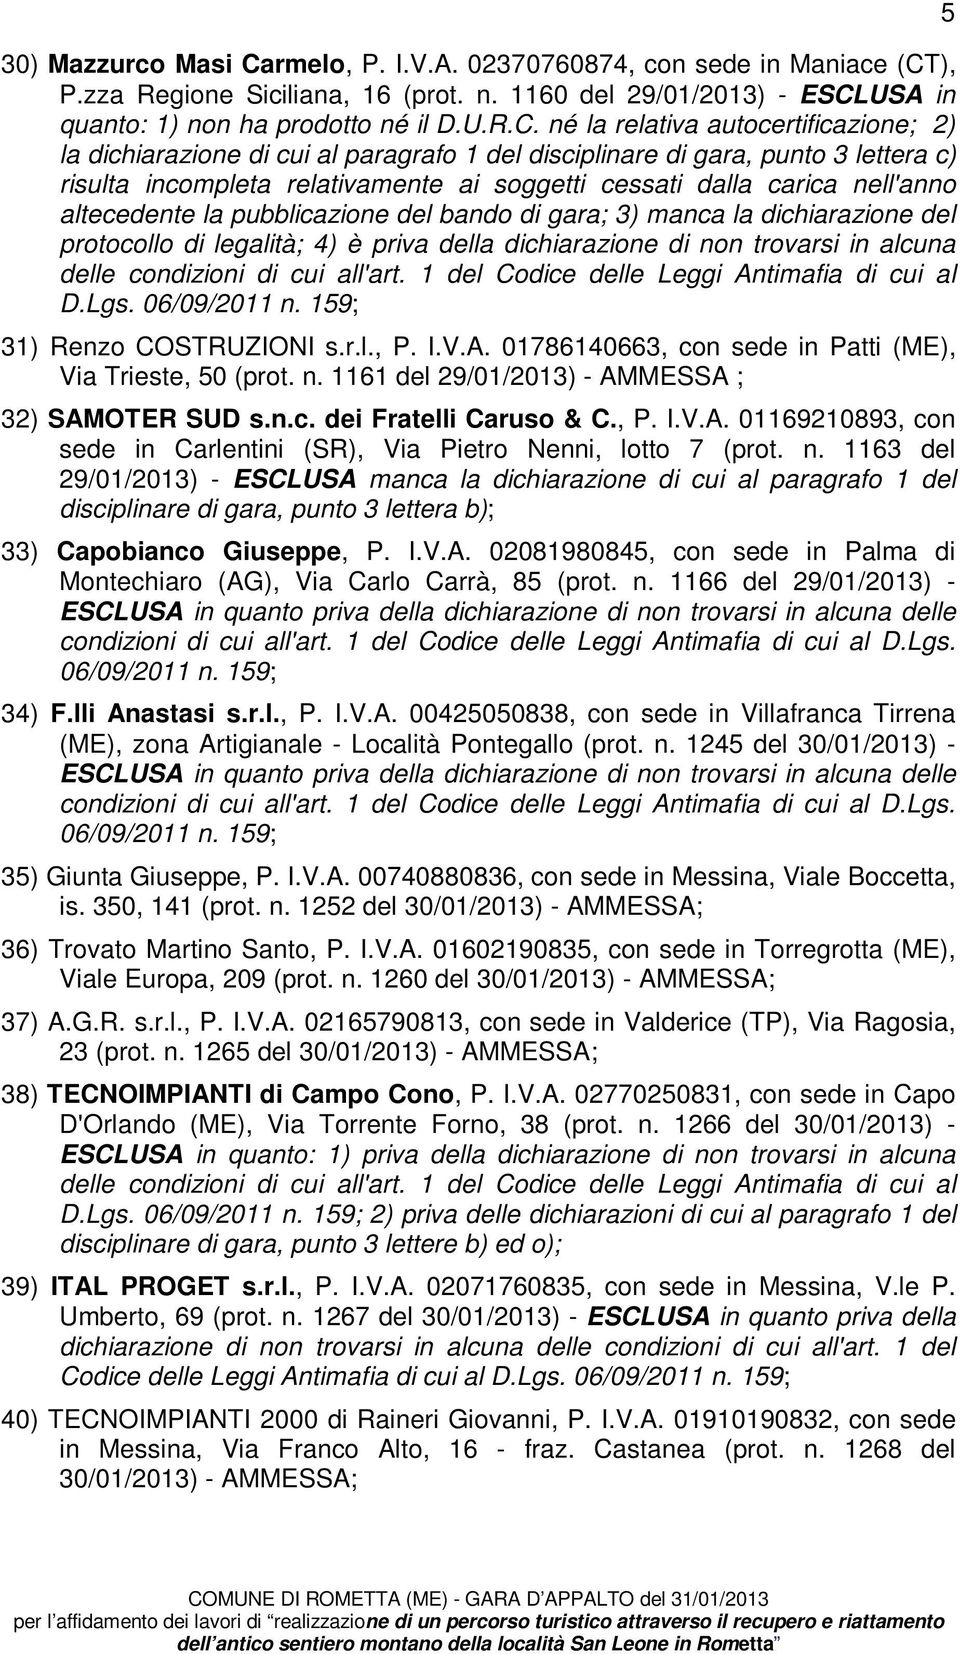 ), P.zza Regione Siciliana, 16 (prot. n. 1160 del 29/01/2013) - ESCL